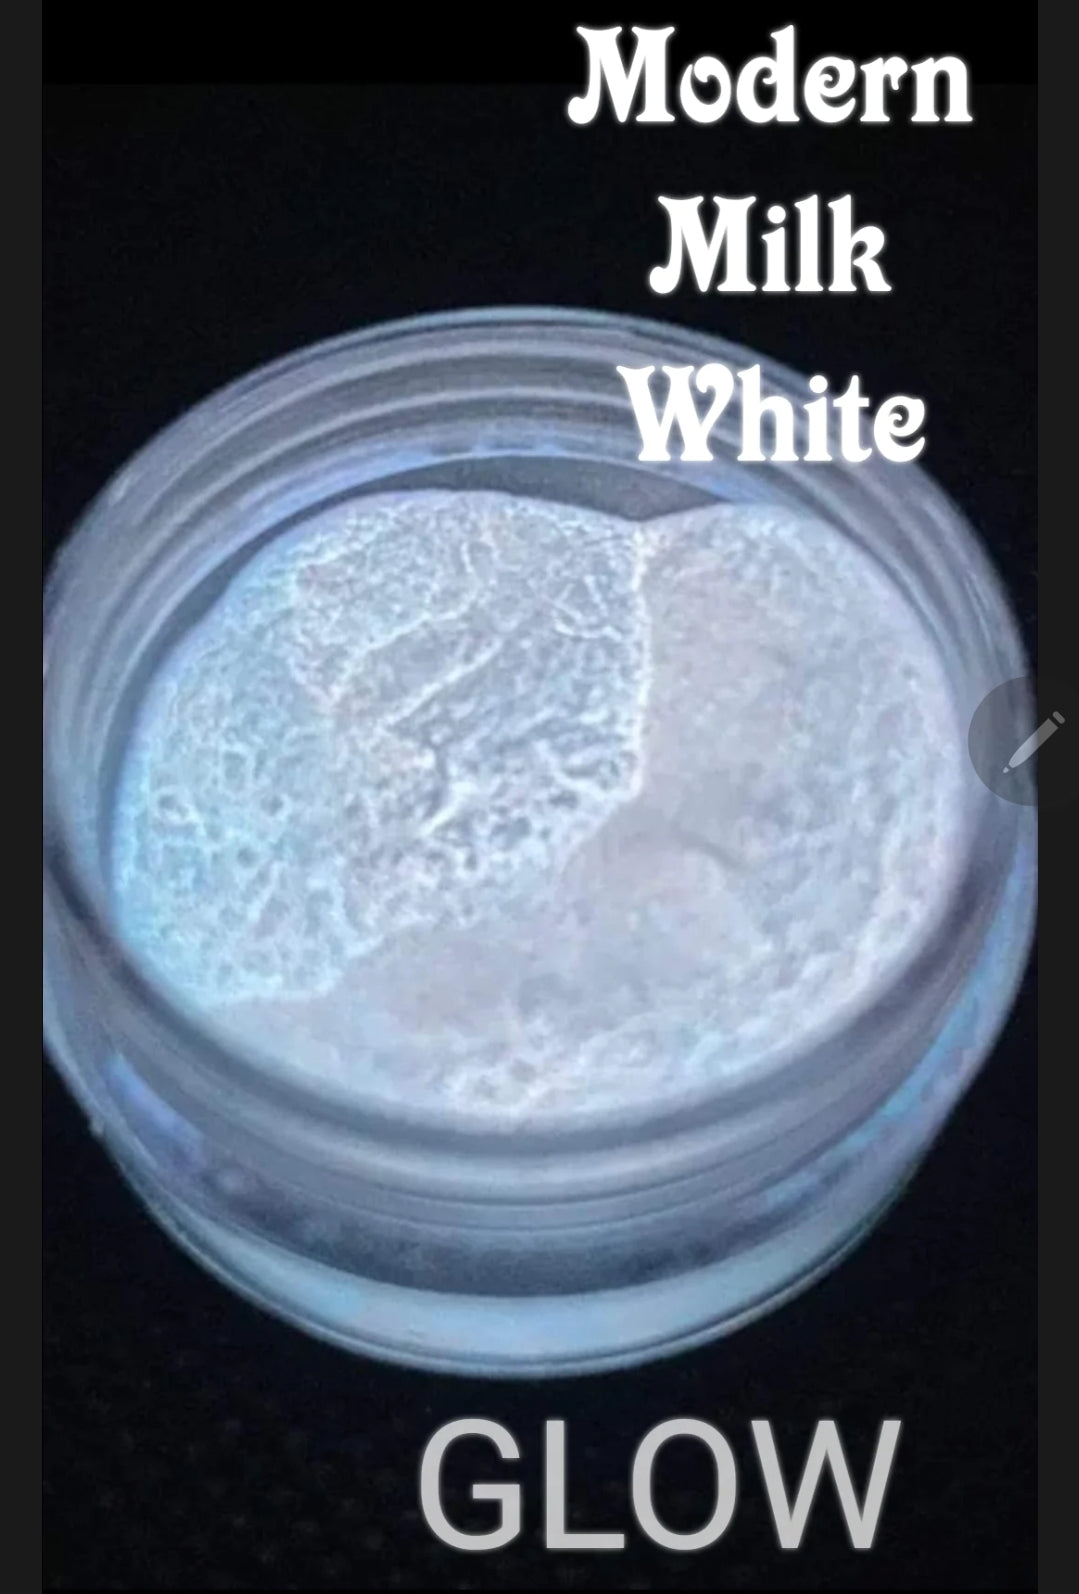 Milk white GLOW in the dark dip powder